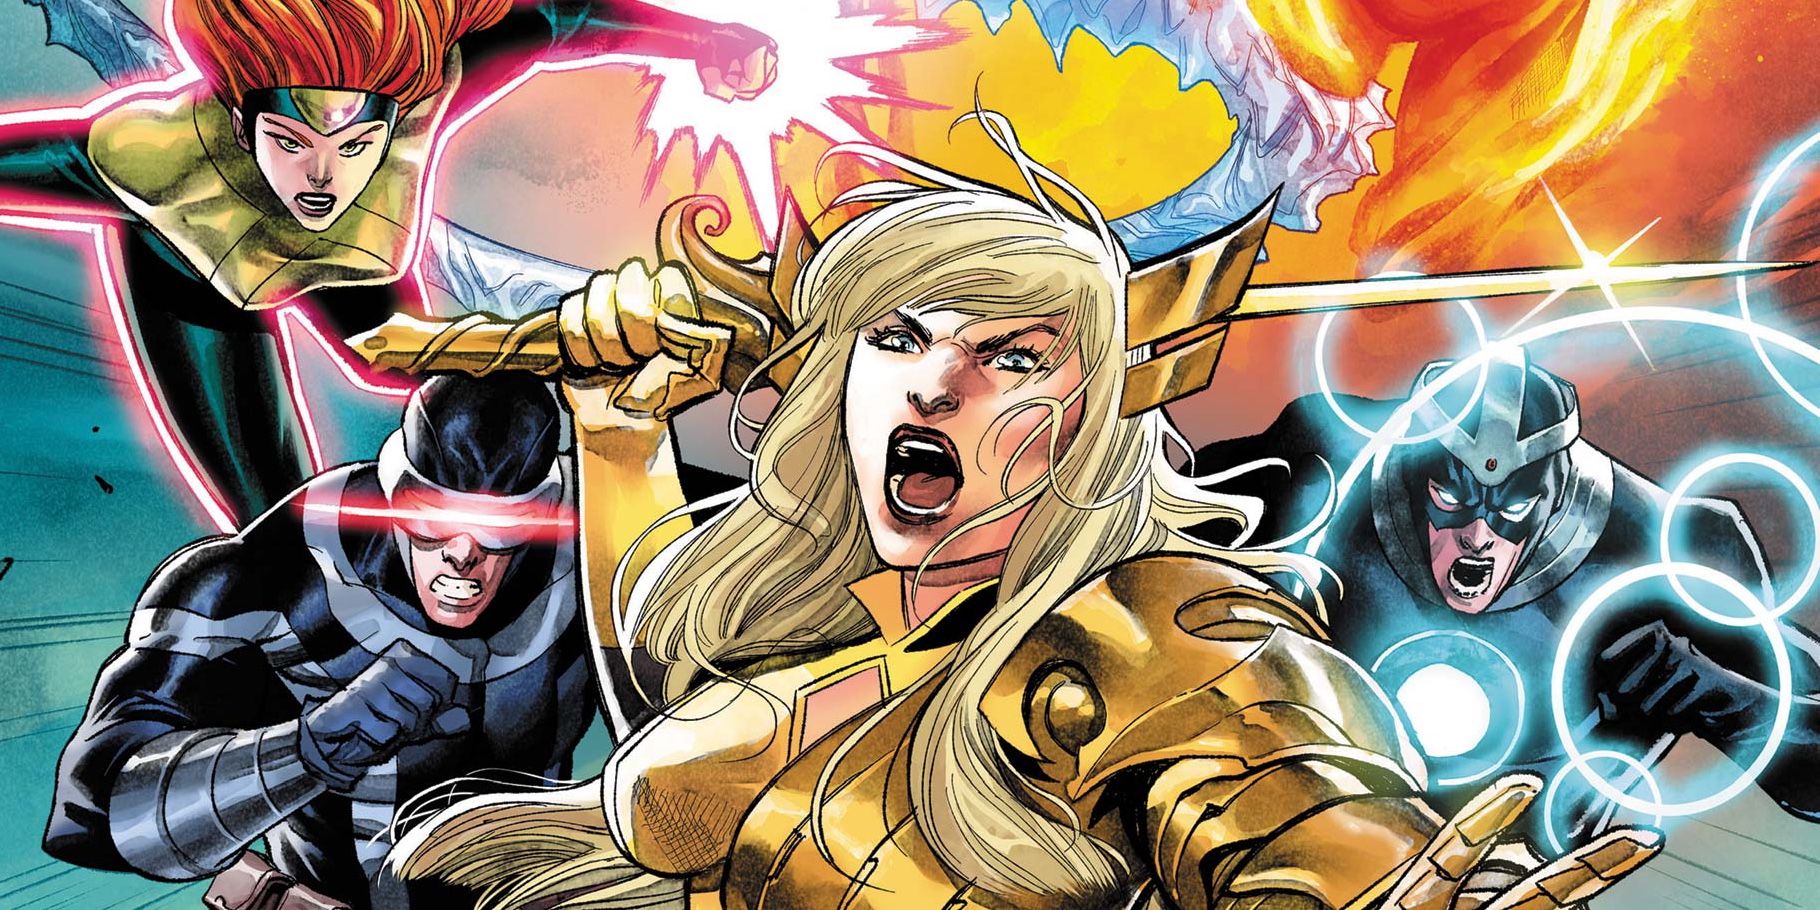 Capa de X-Men #17 com Magia na liderança